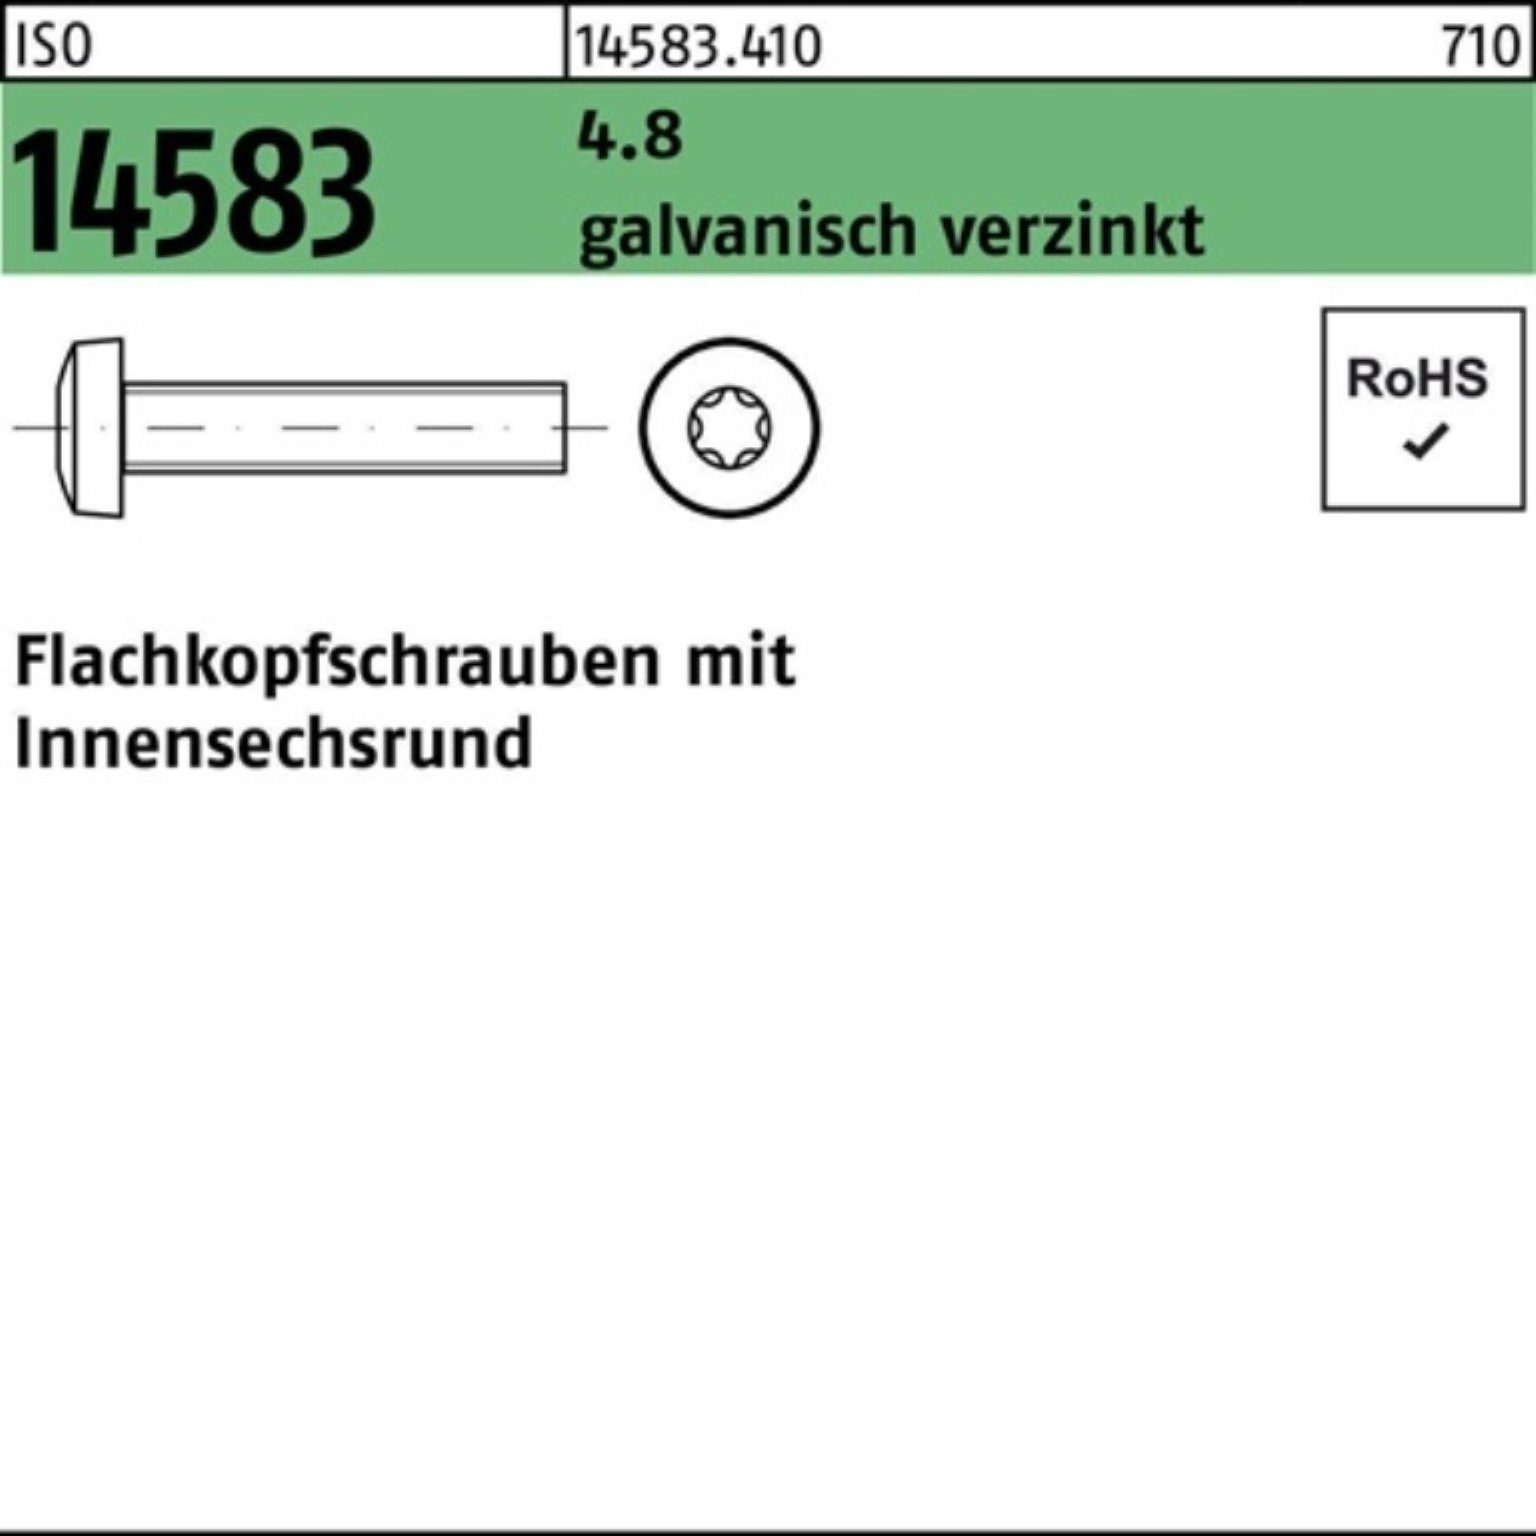 Flachkopfschraube 1000er Pack Schraube ISO 4.8 galv.verz. Reyher ISR 14583 1000S M3x30